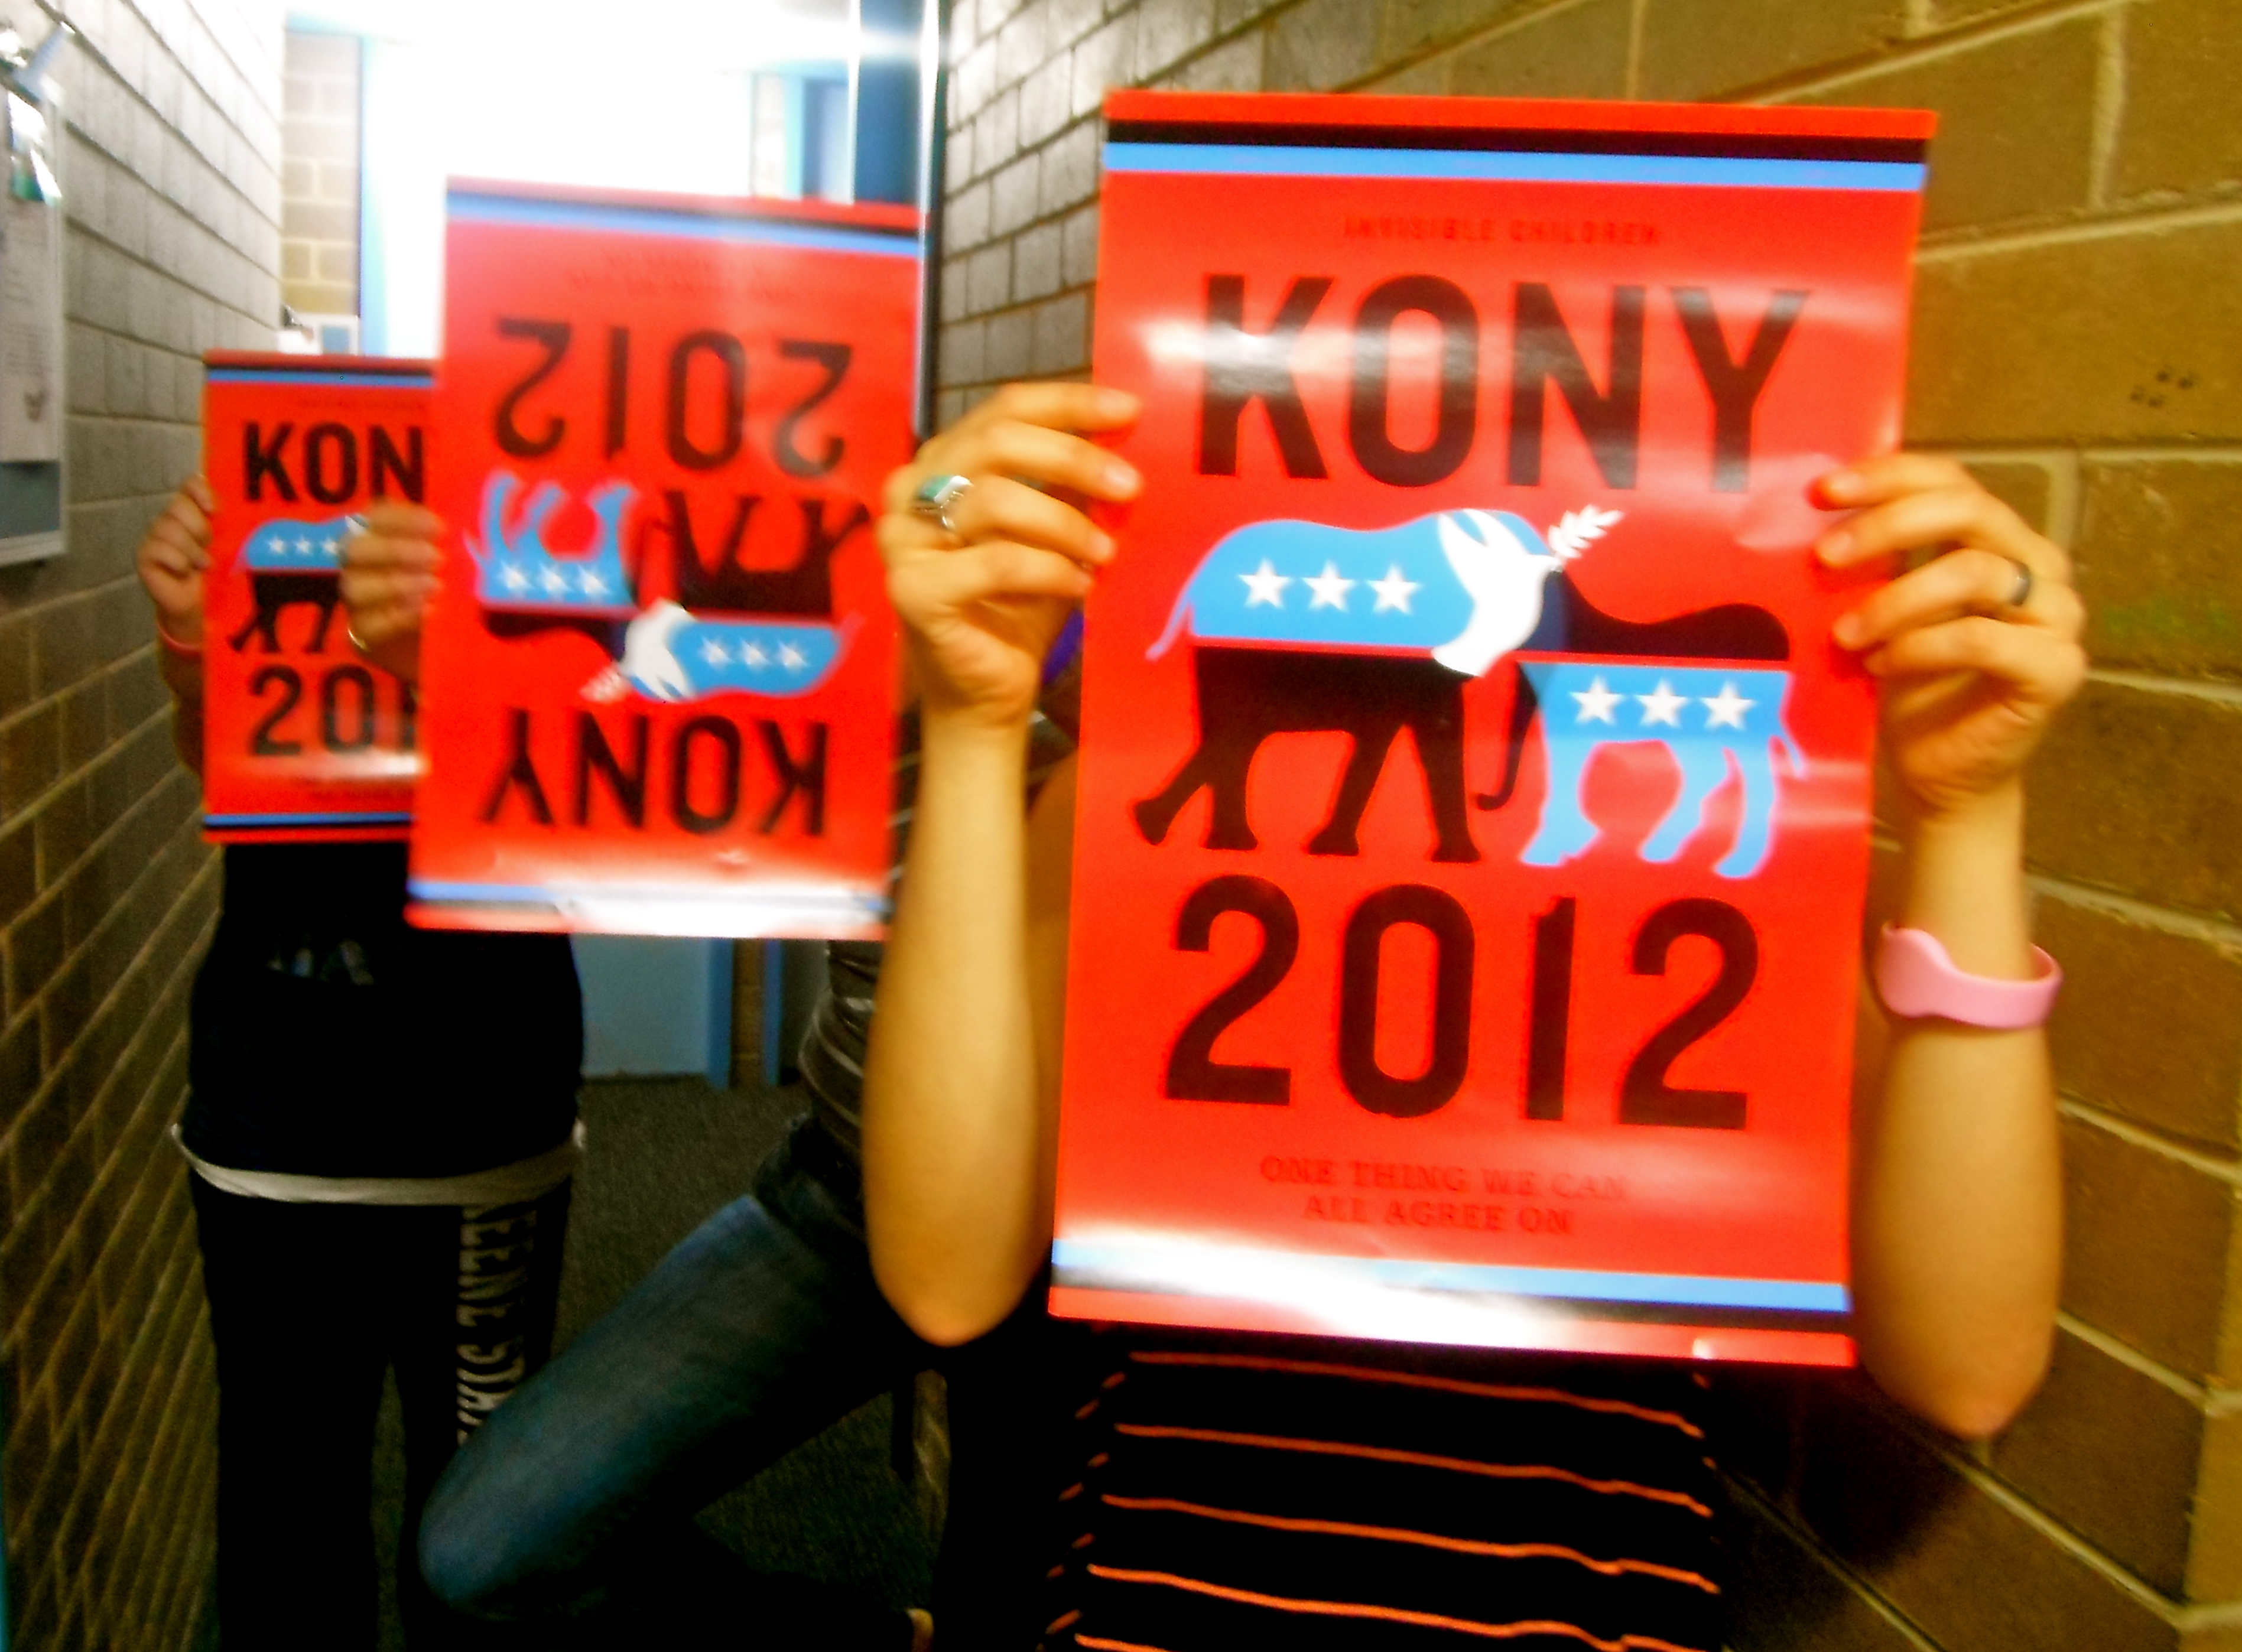 KONY 2012: The Resurgence?